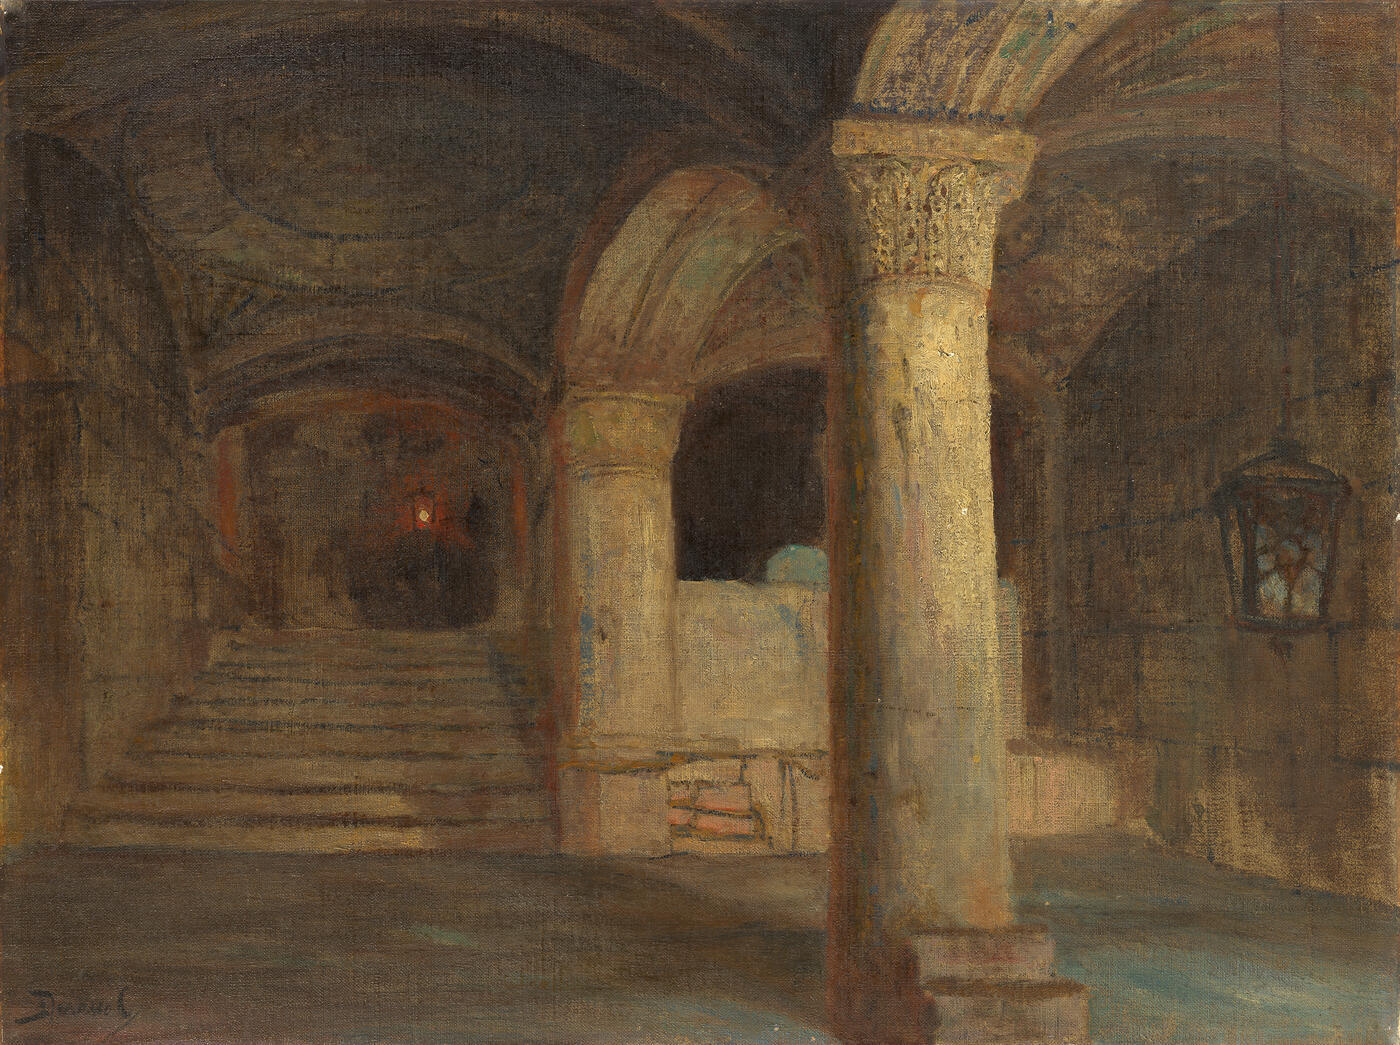 The Vault under Al-Aqsa Mosque. Temple Mount, Jerusalem